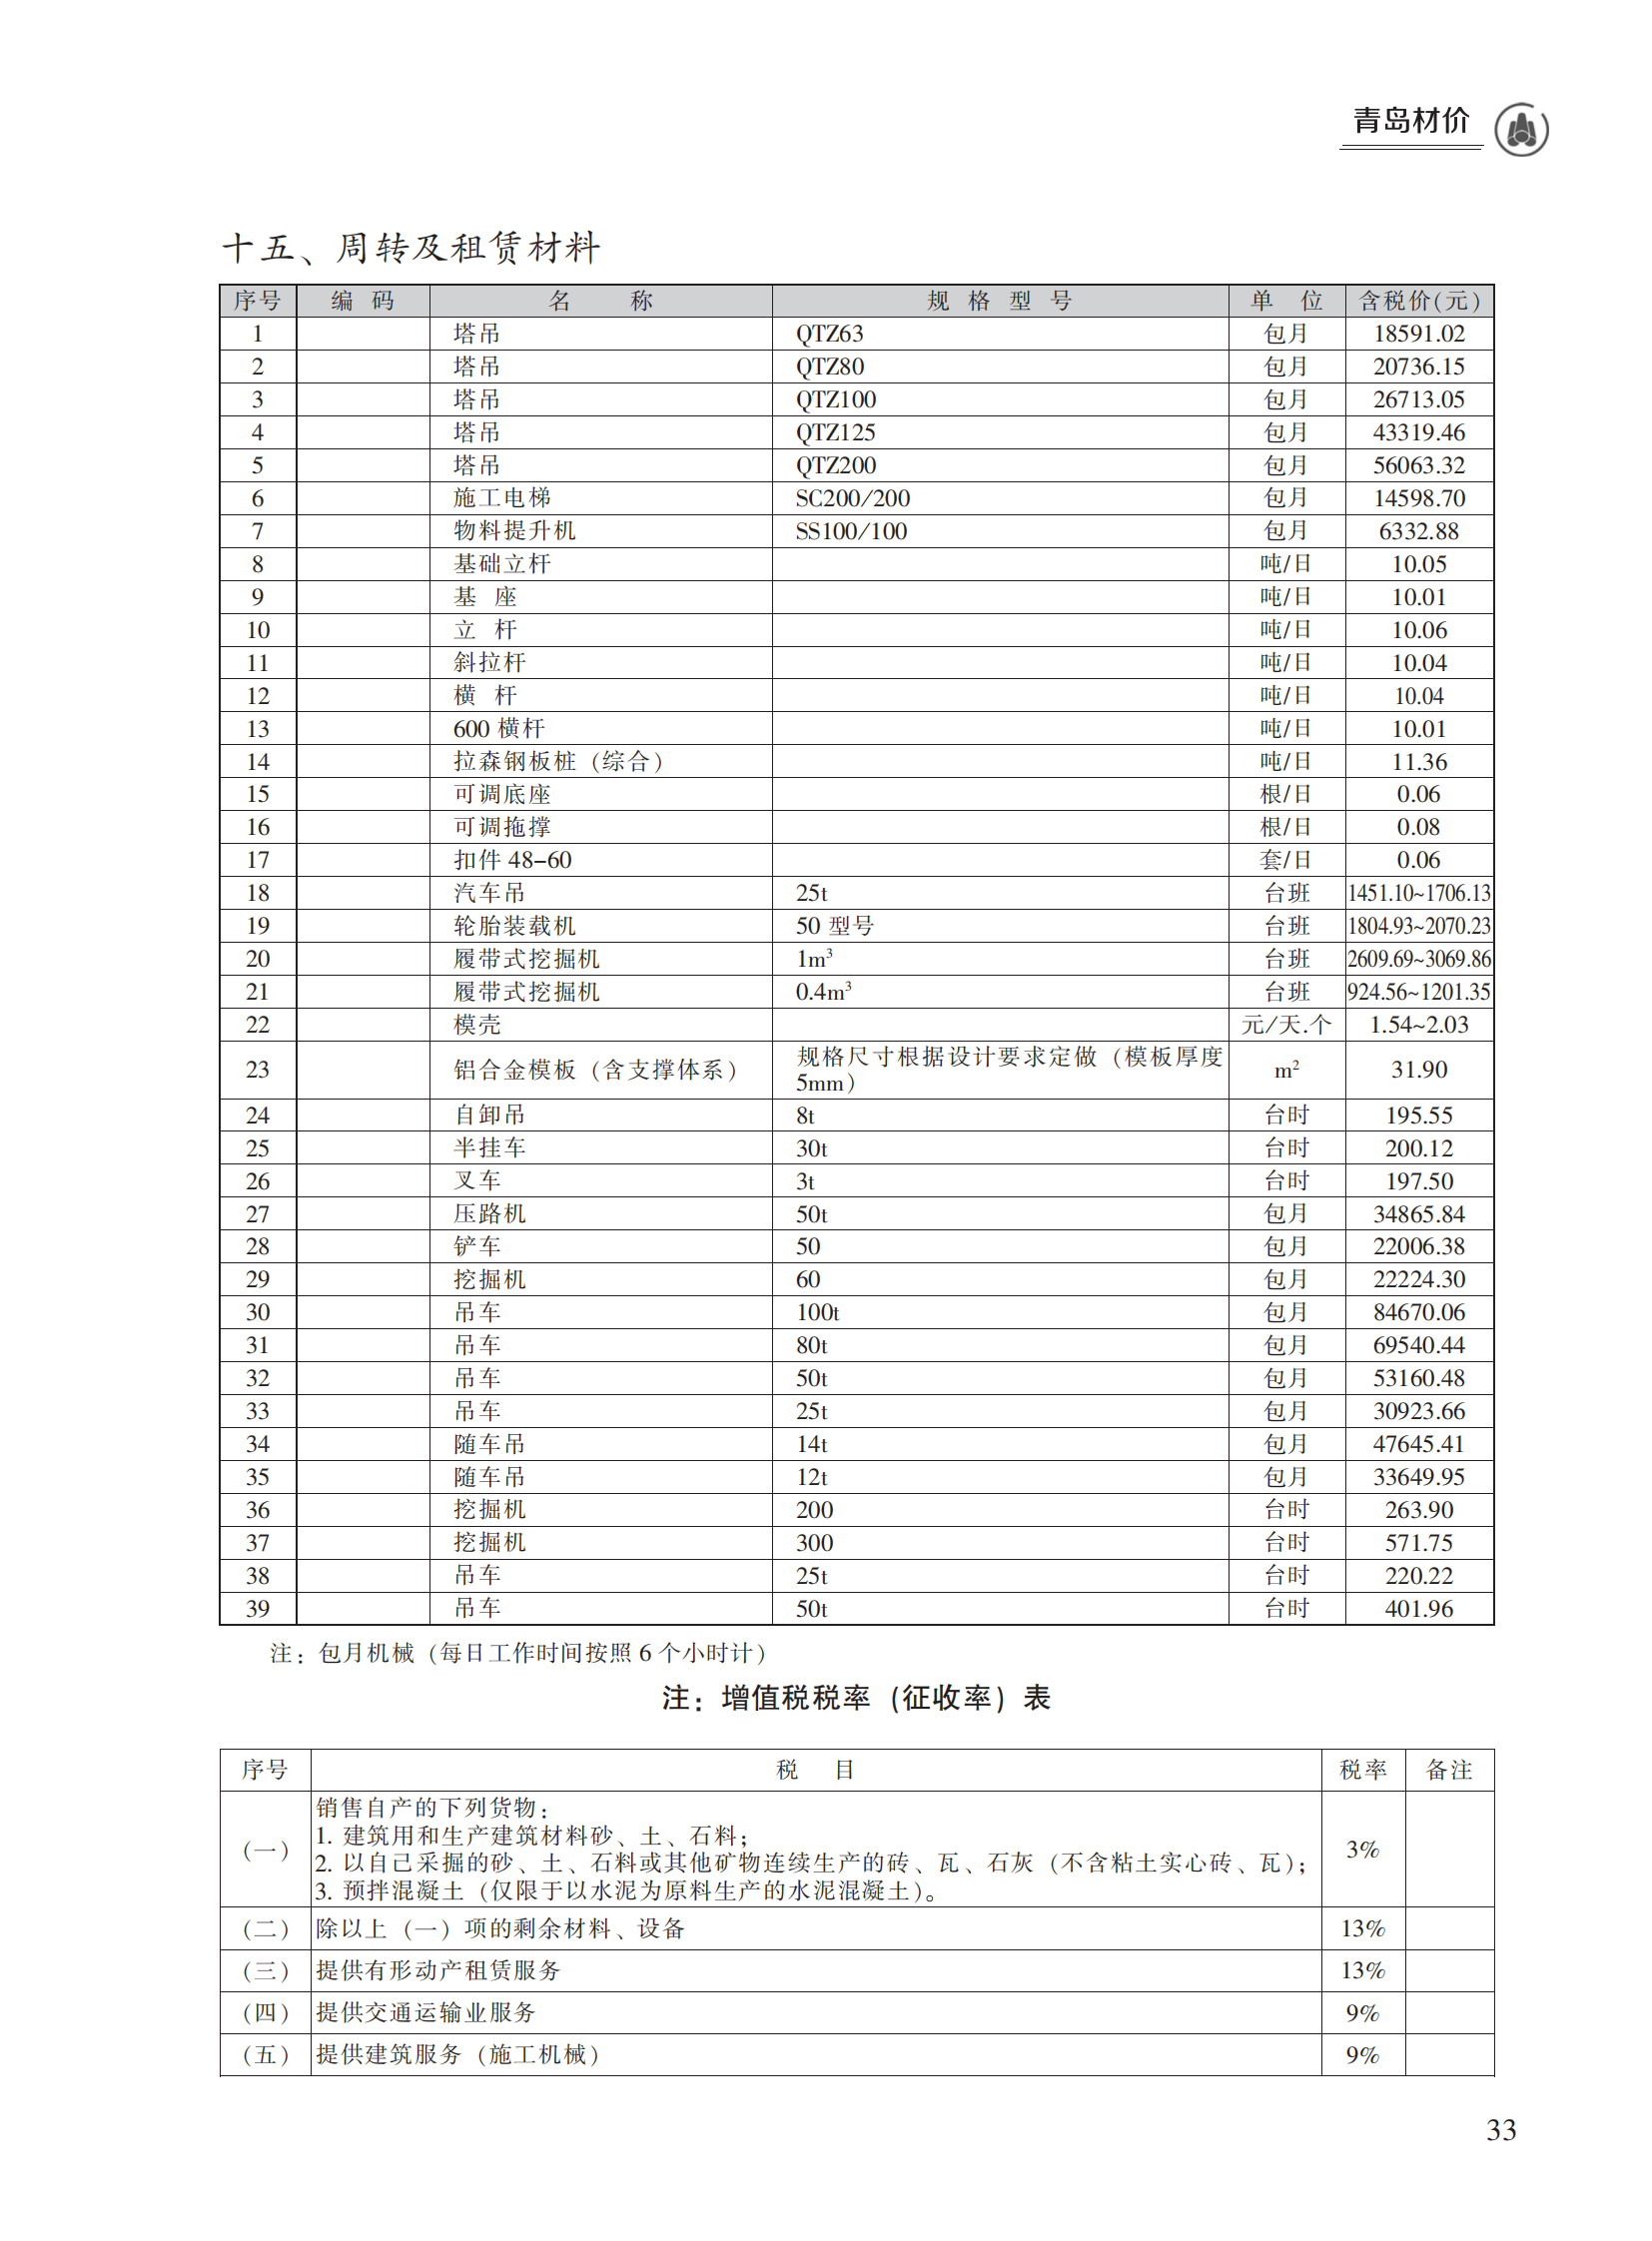 2023年8月青岛市建设工程材料价格及造价指数_32.png